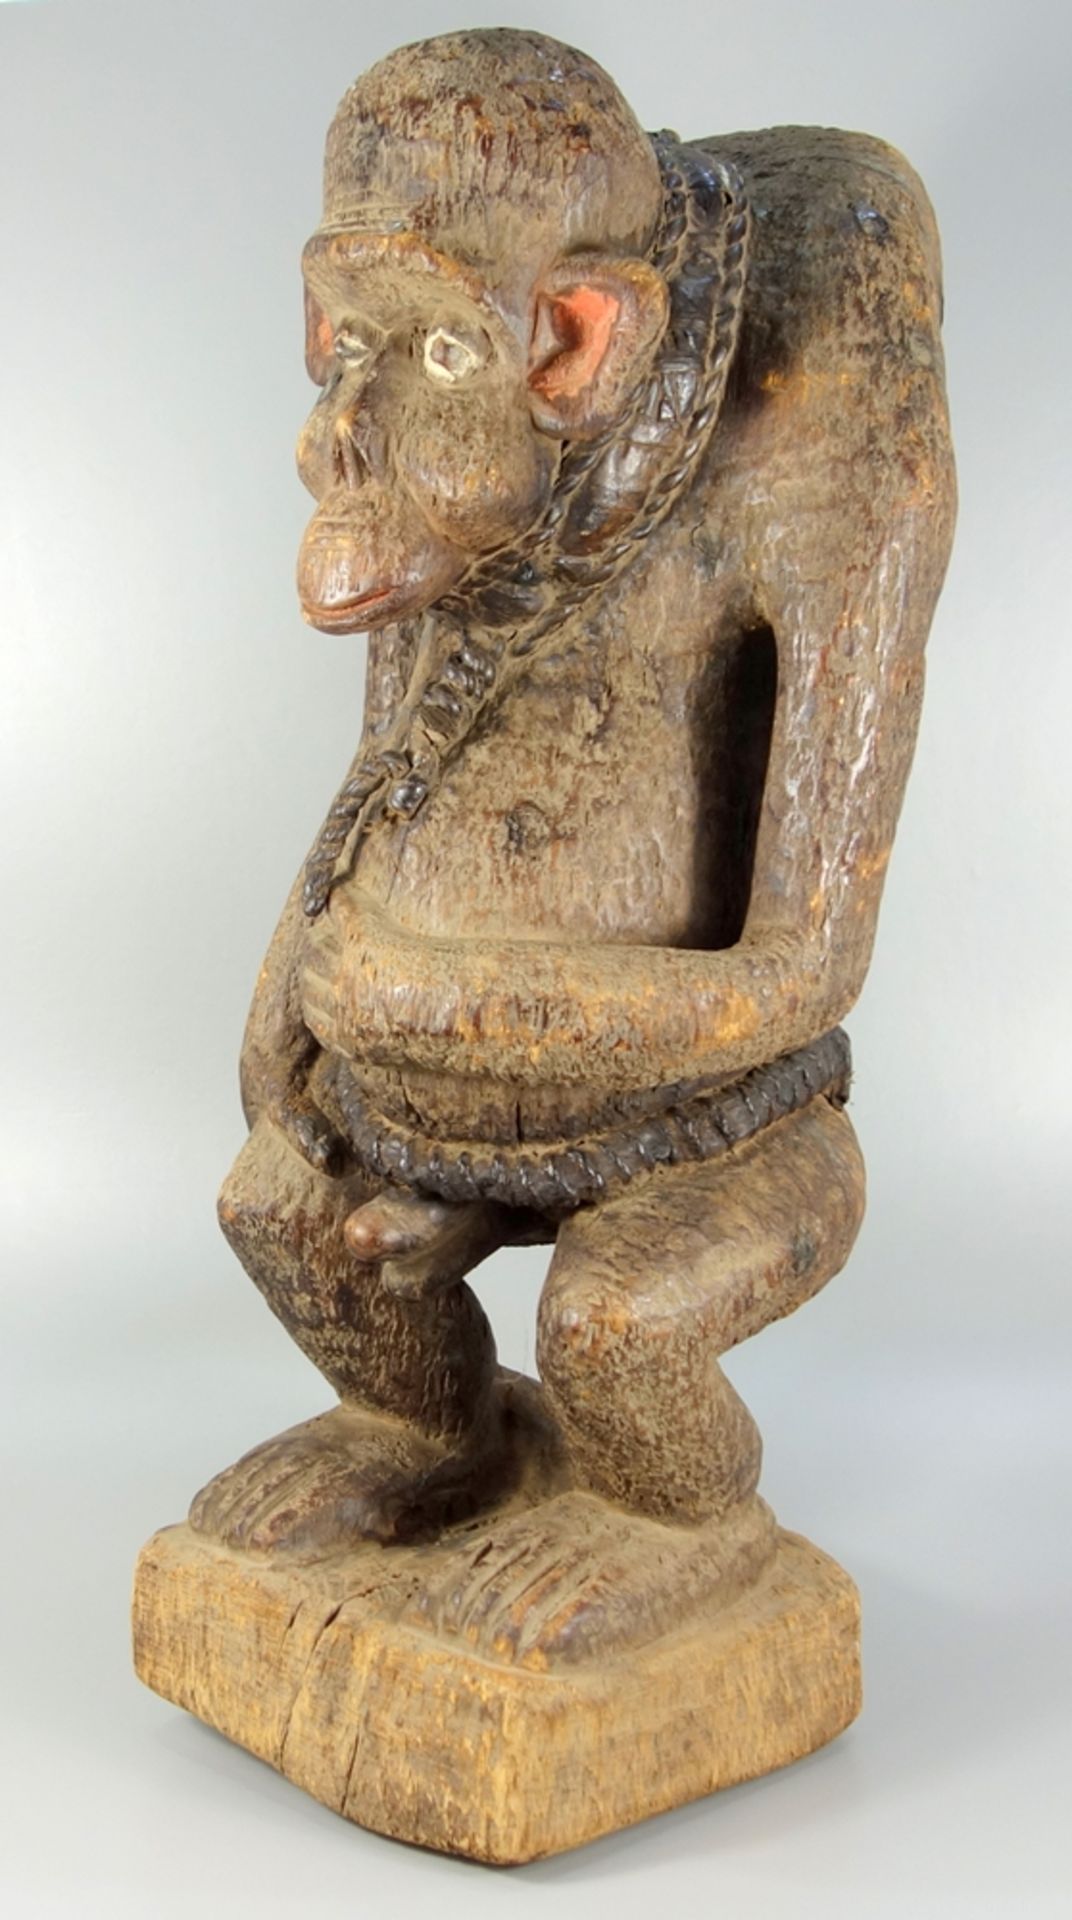 große Affenfigur, Bulu, Kamerun, stehende Darstellung mit Hals- und Bauchgurt, tlw. farbig